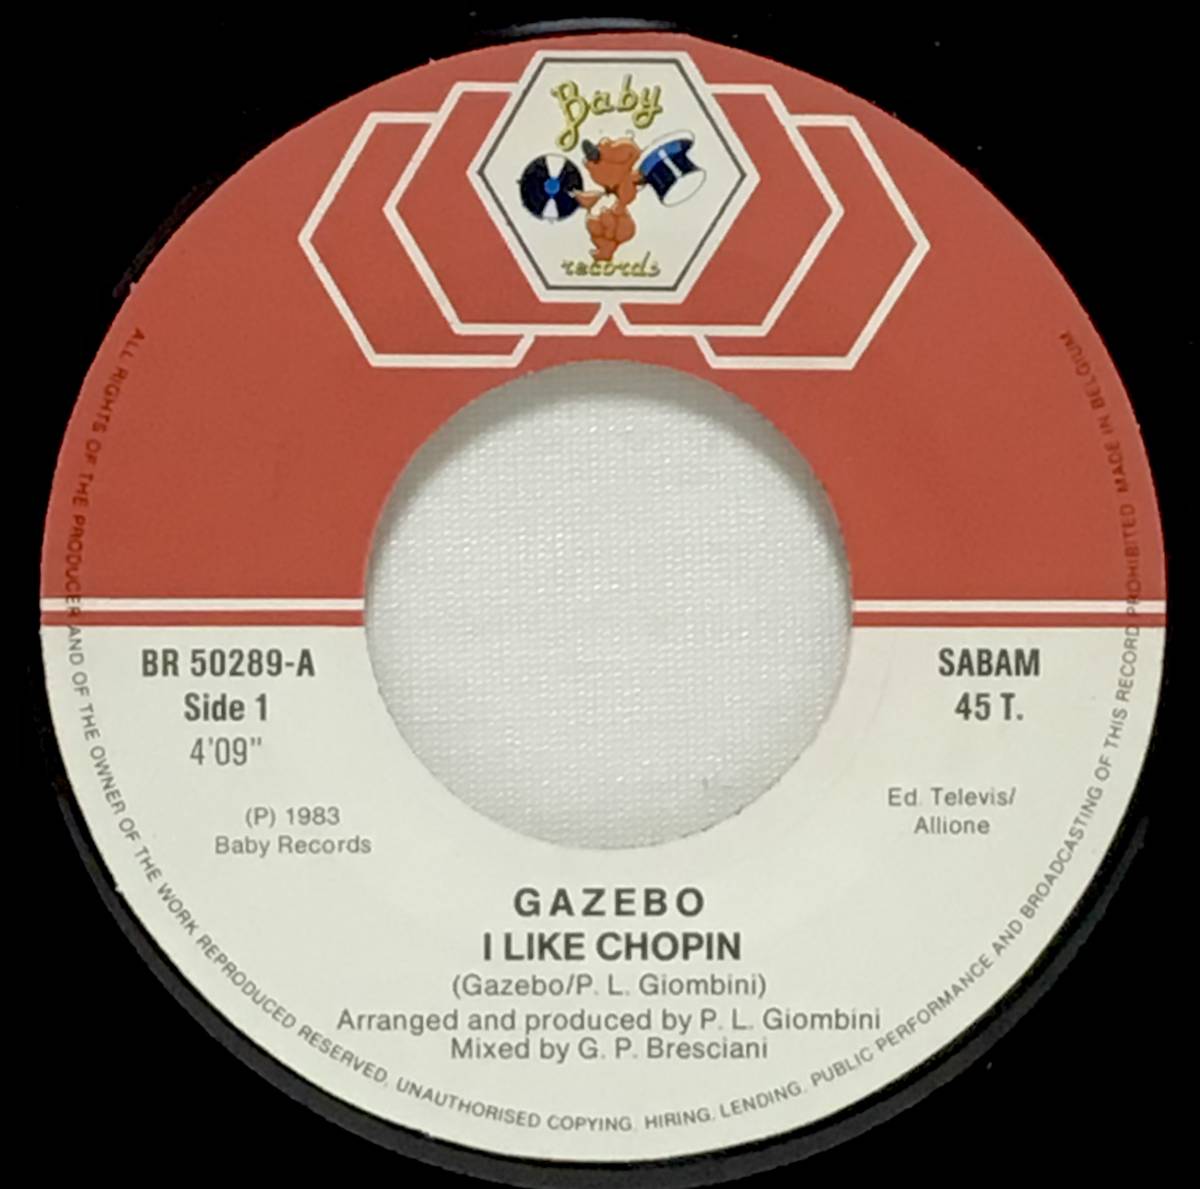 【べ7】 GAZEBO / I LIKE CHOPIN / B面インスト / 1983 ベルギー盤 7インチシングル EP 45 EUROBEAT 小林麻美 雨音はショパンの調べ 原曲_画像4